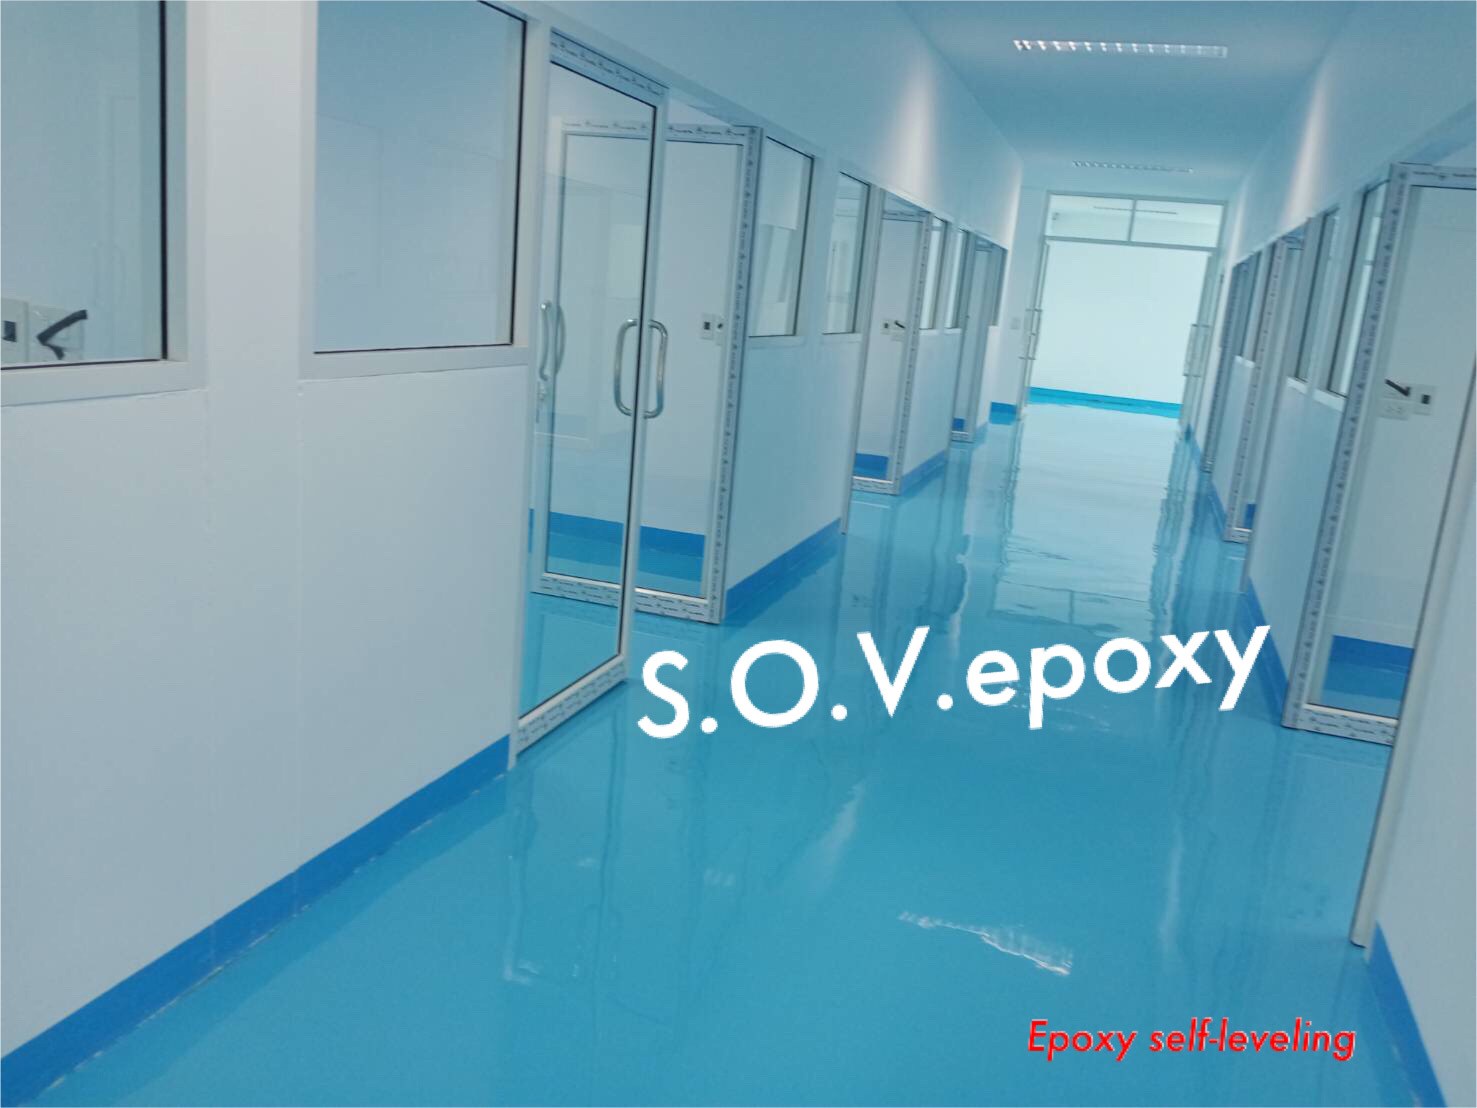 Sov Epoxy ทำพื้นอีพ็อกซี่ พื้นพียู พื้นโรงงาน พื้นสนามกีฬา CH 14